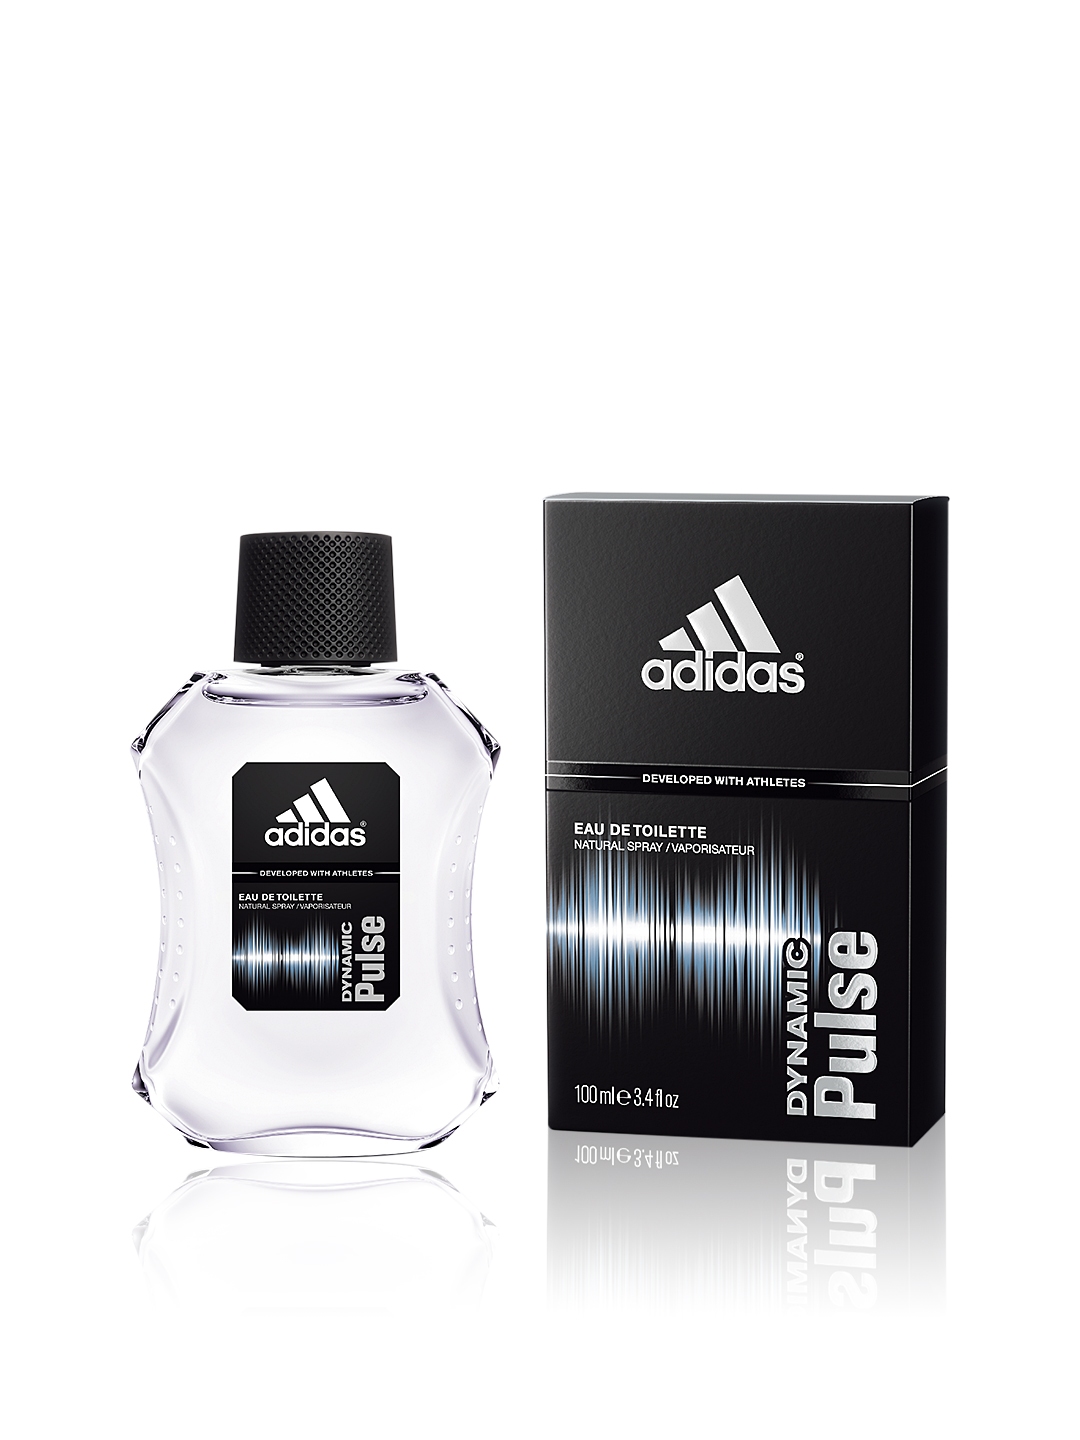 adidas developed with athletes eau de toilette